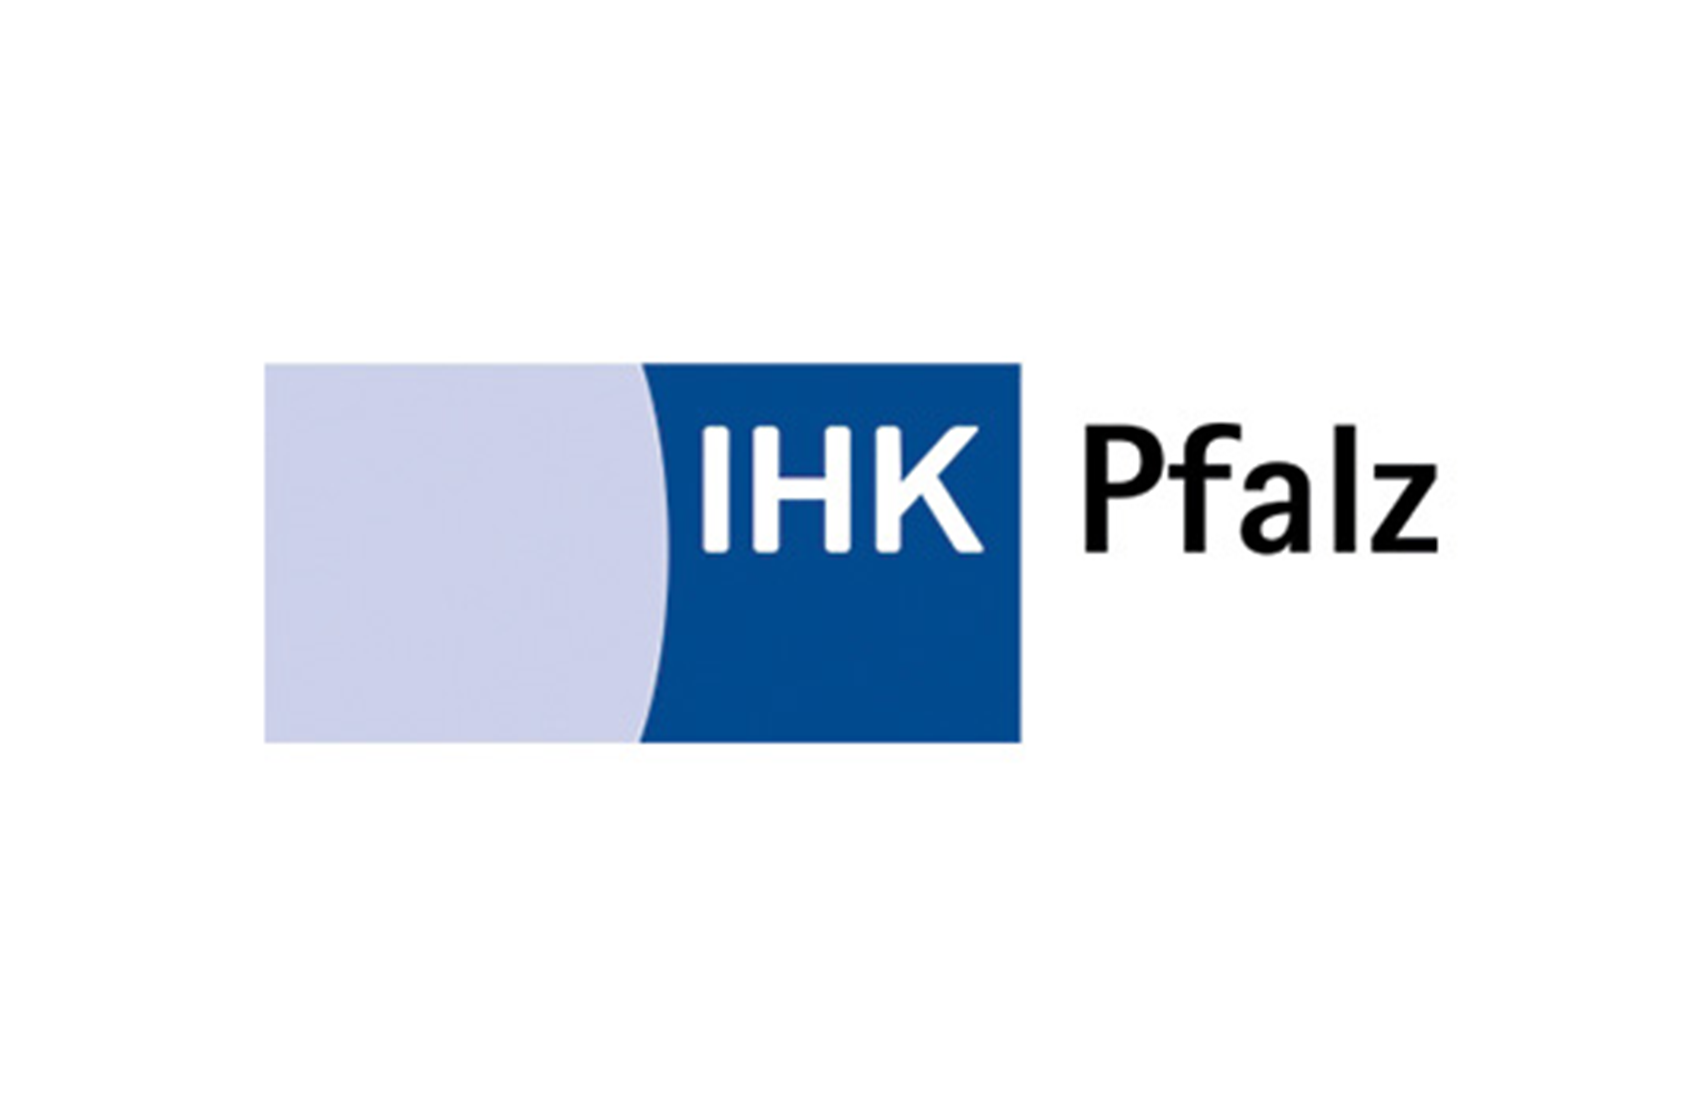 Logo IHK Pfalz